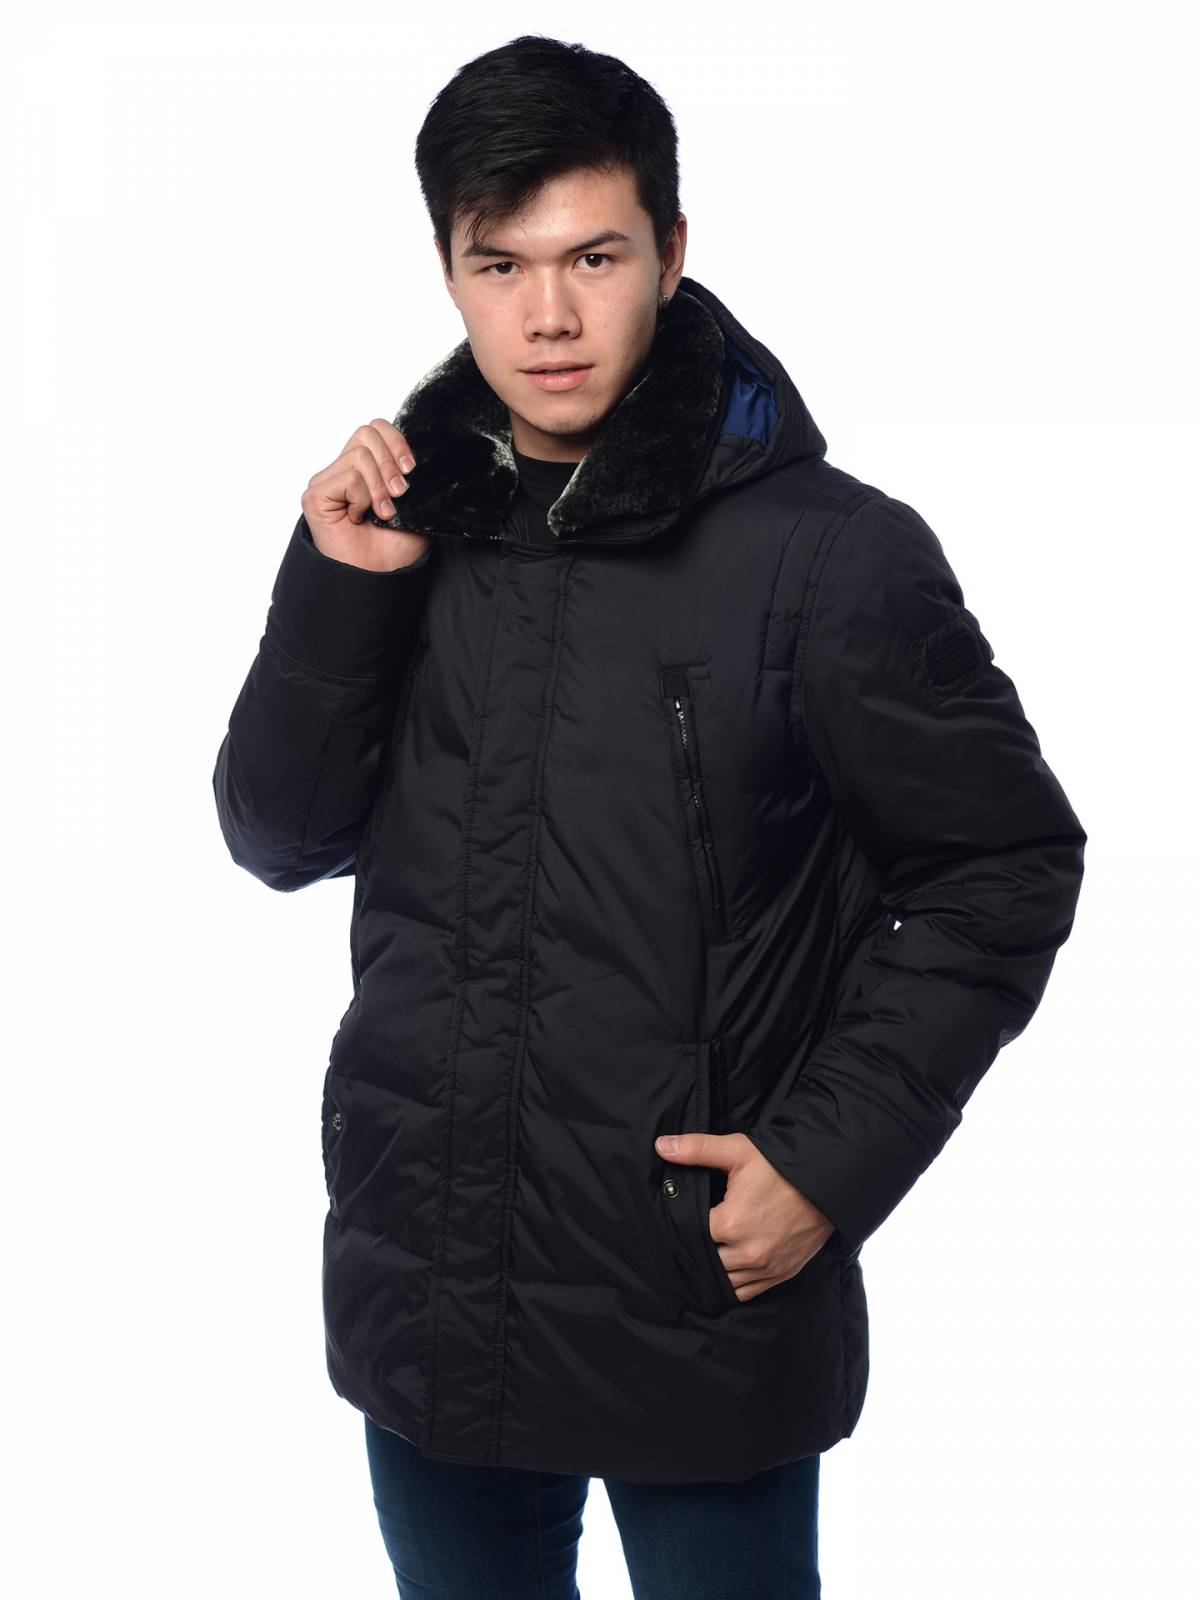 Зимняя куртка мужская Clasna 3395 черная 54 RU